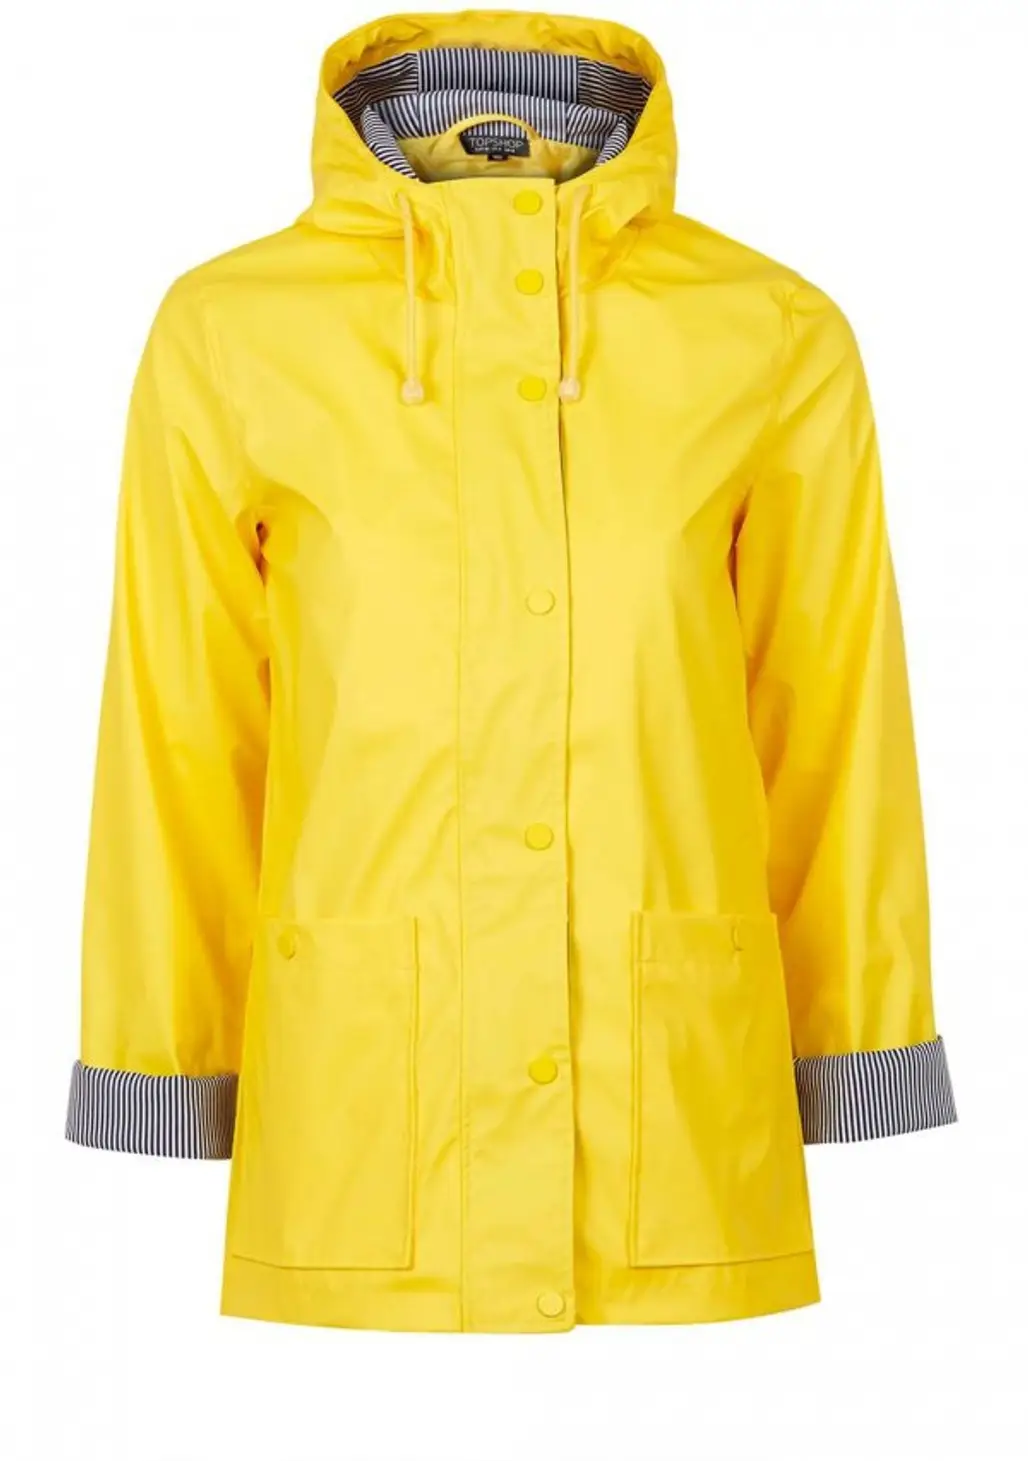 Perfect Yellow Coat